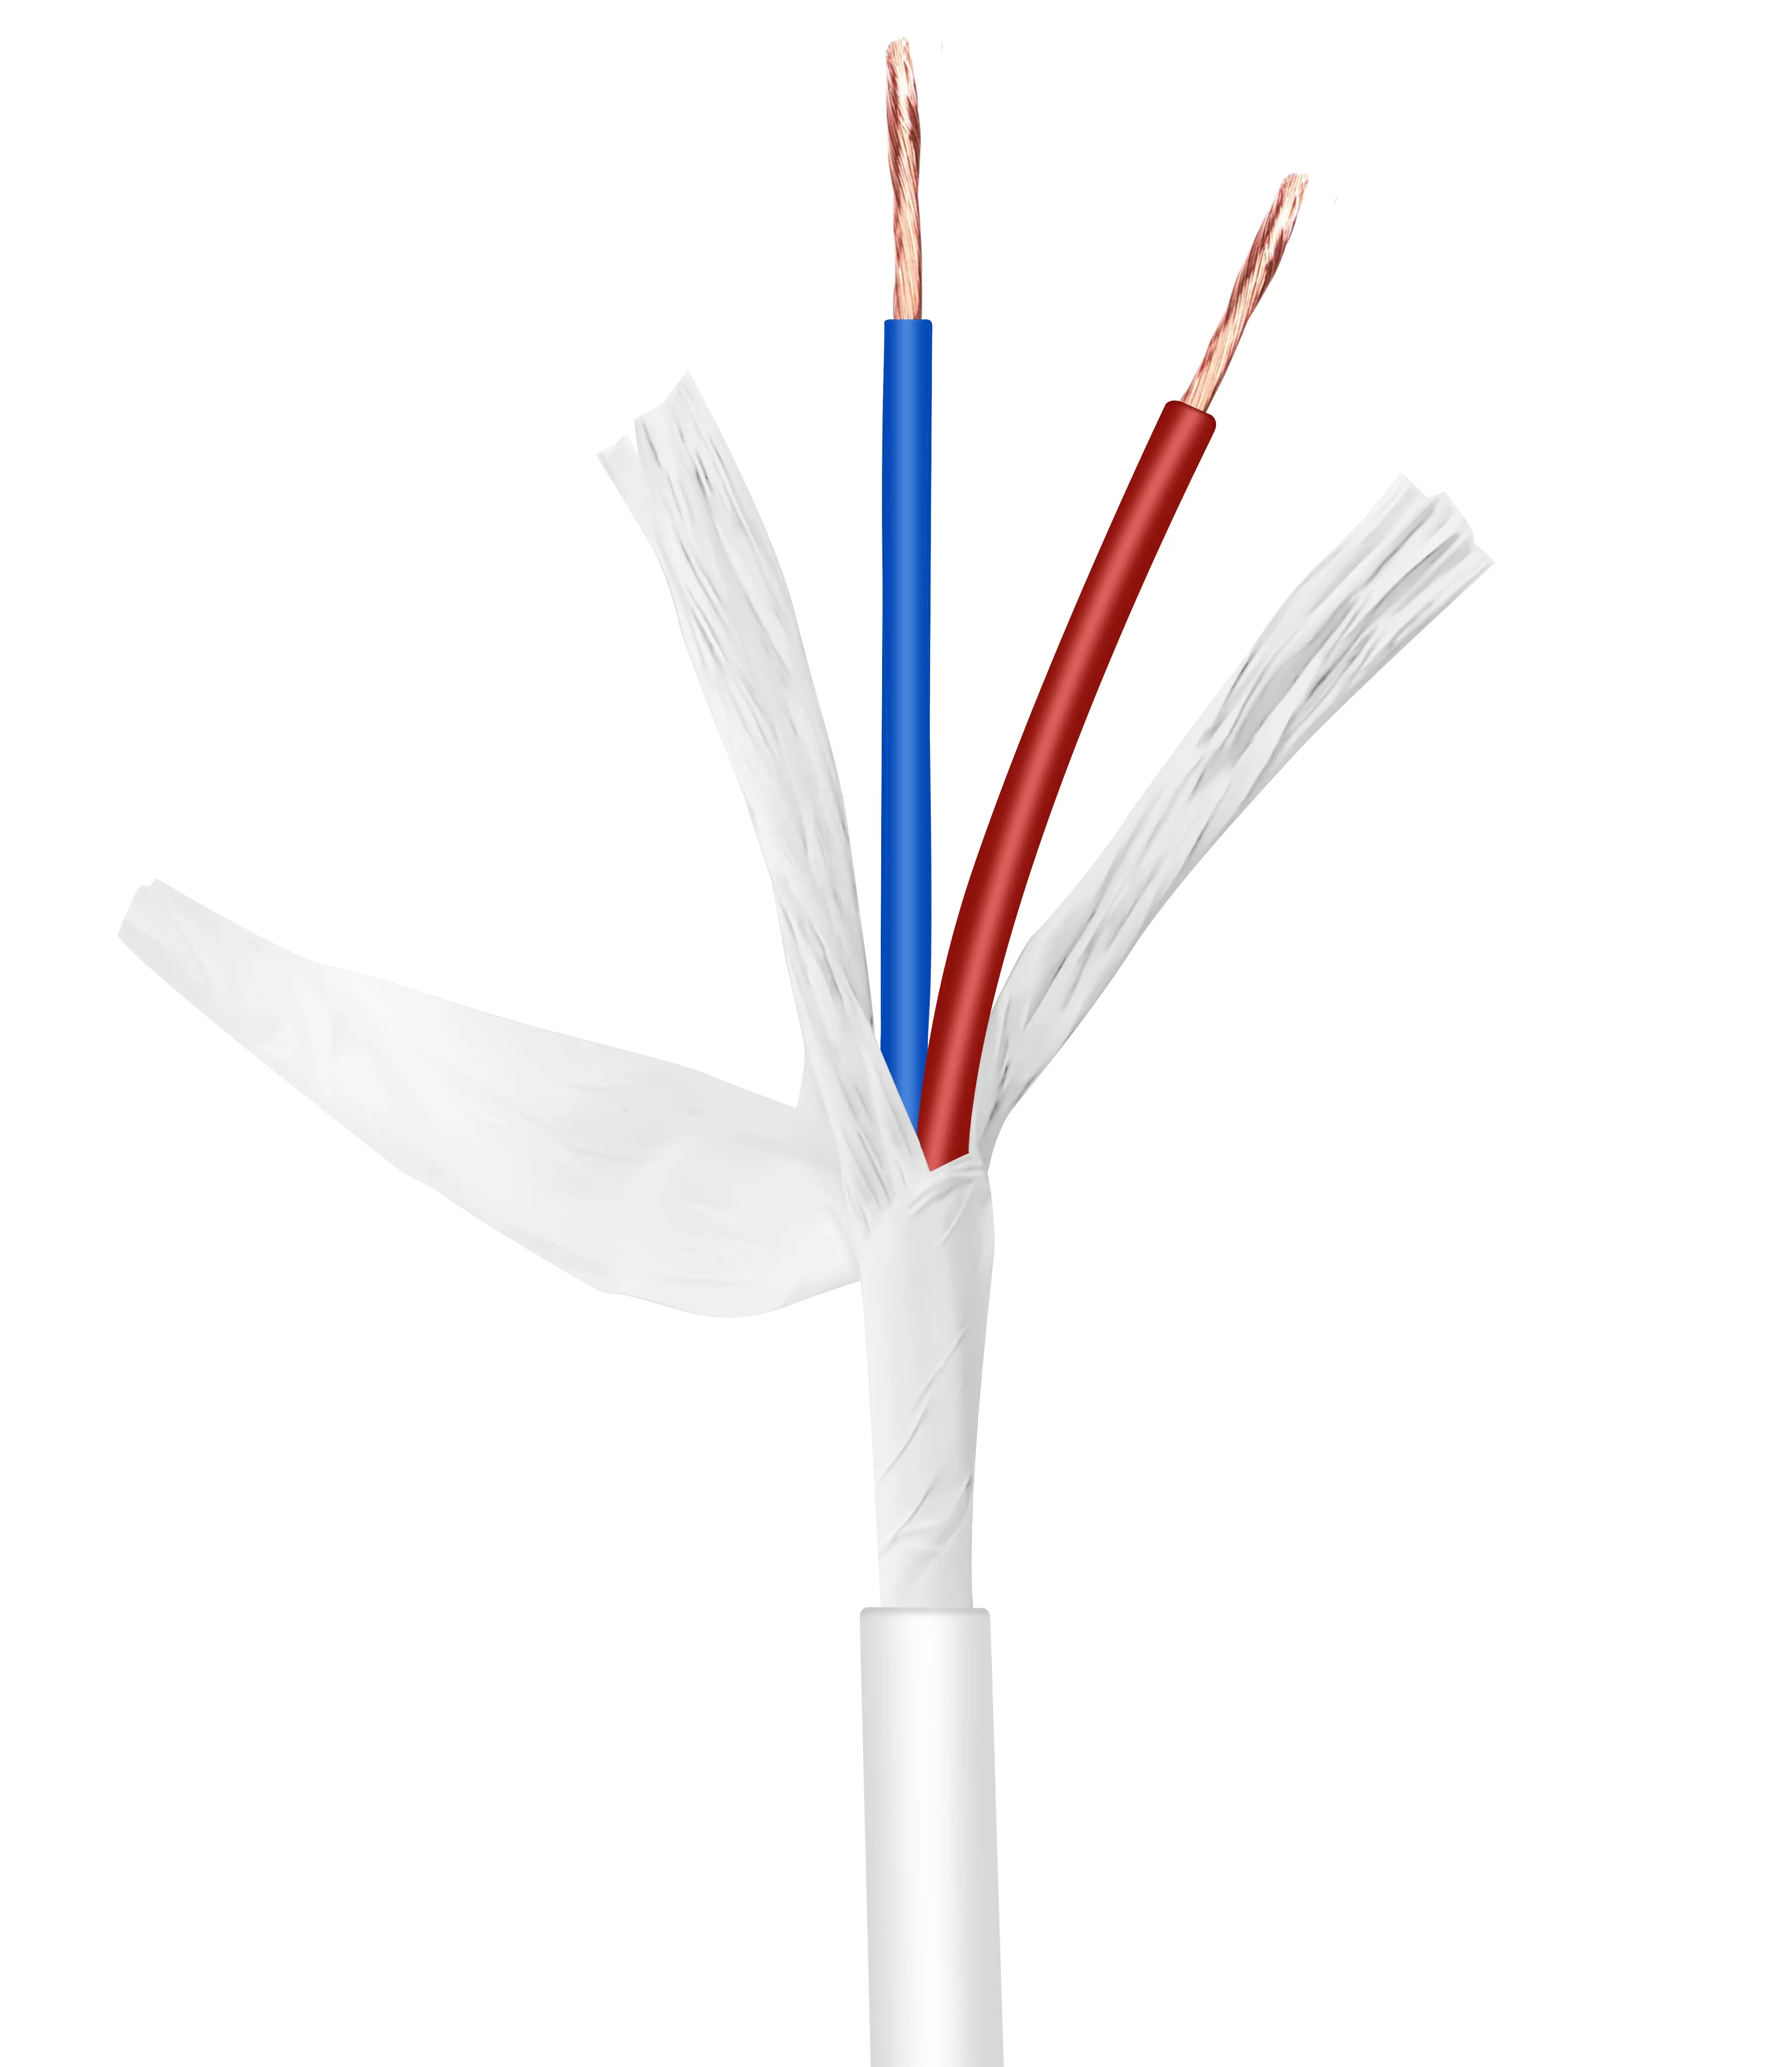 Cable blindado de bajo precio y alta calidad, cables de alimentación de cobre estañado, cables eléctricos para distribución eléctrica doméstica